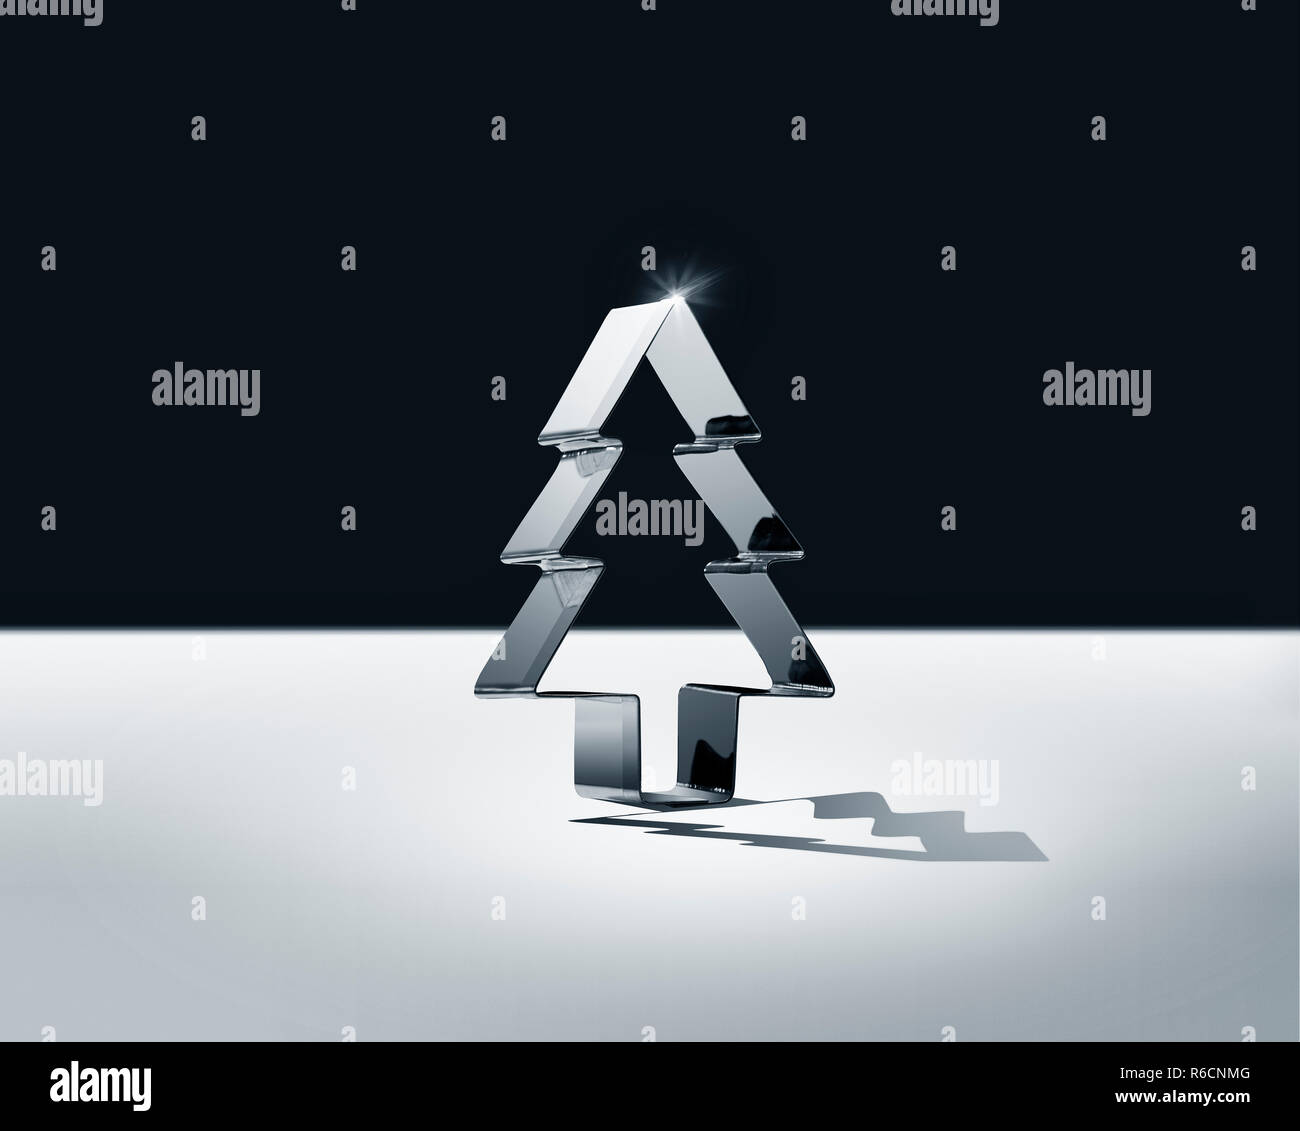 En blanco y negro todavía la vida de forma vertical brillante Christmas tree cookie cutter Foto de stock